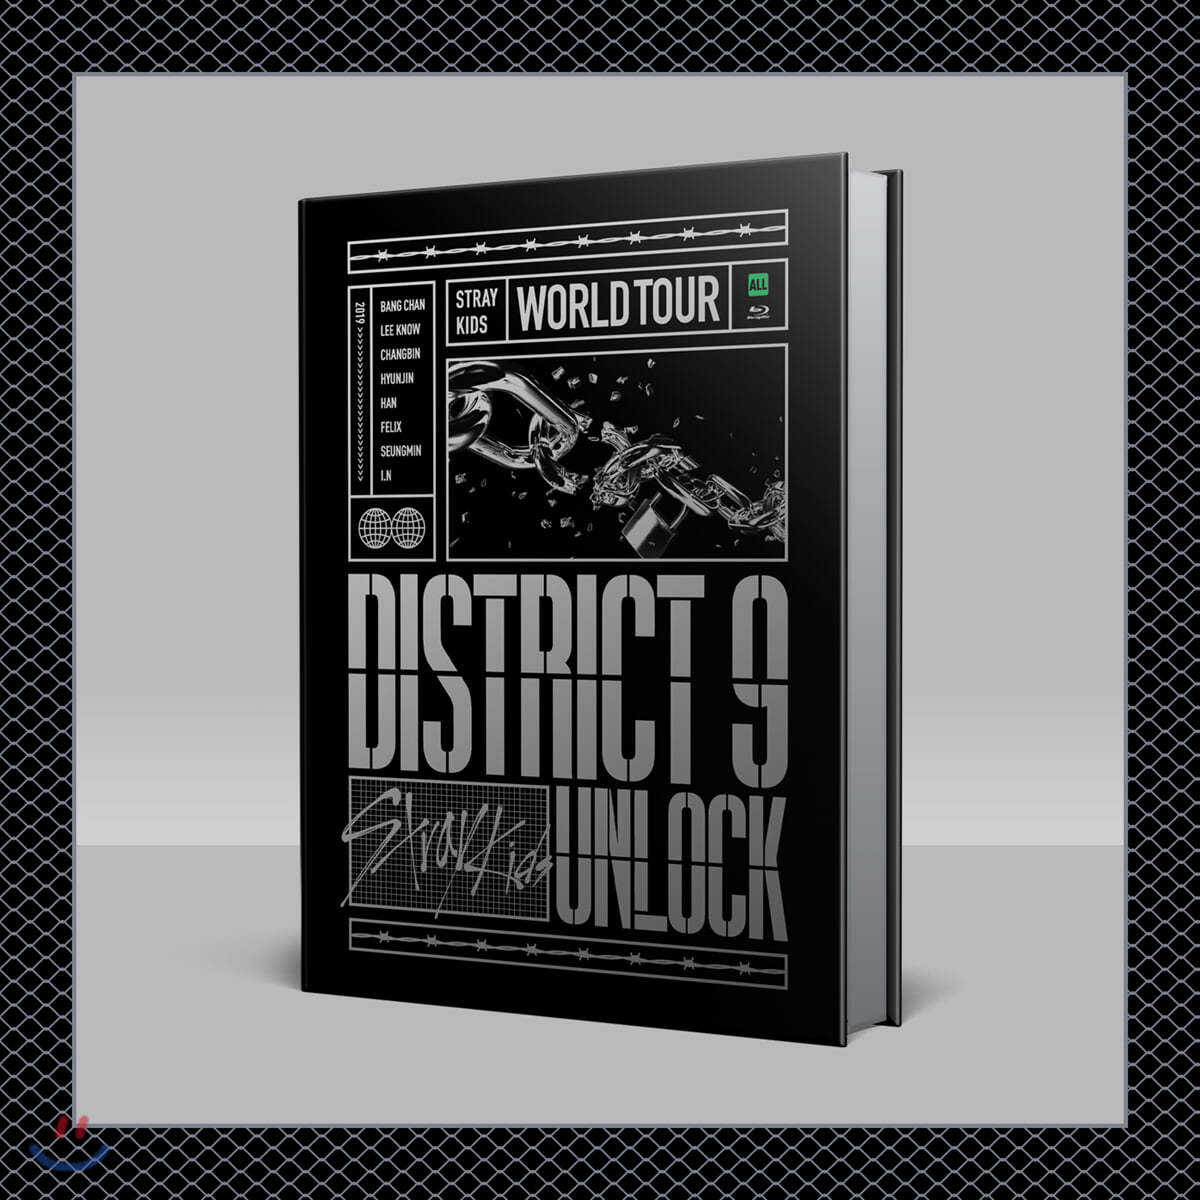 스트레이 키즈 (Stray Kids) - Stray Kids World Tour &#39;District 9 : Unlock&#39; in SEOUL BLU-RAY 